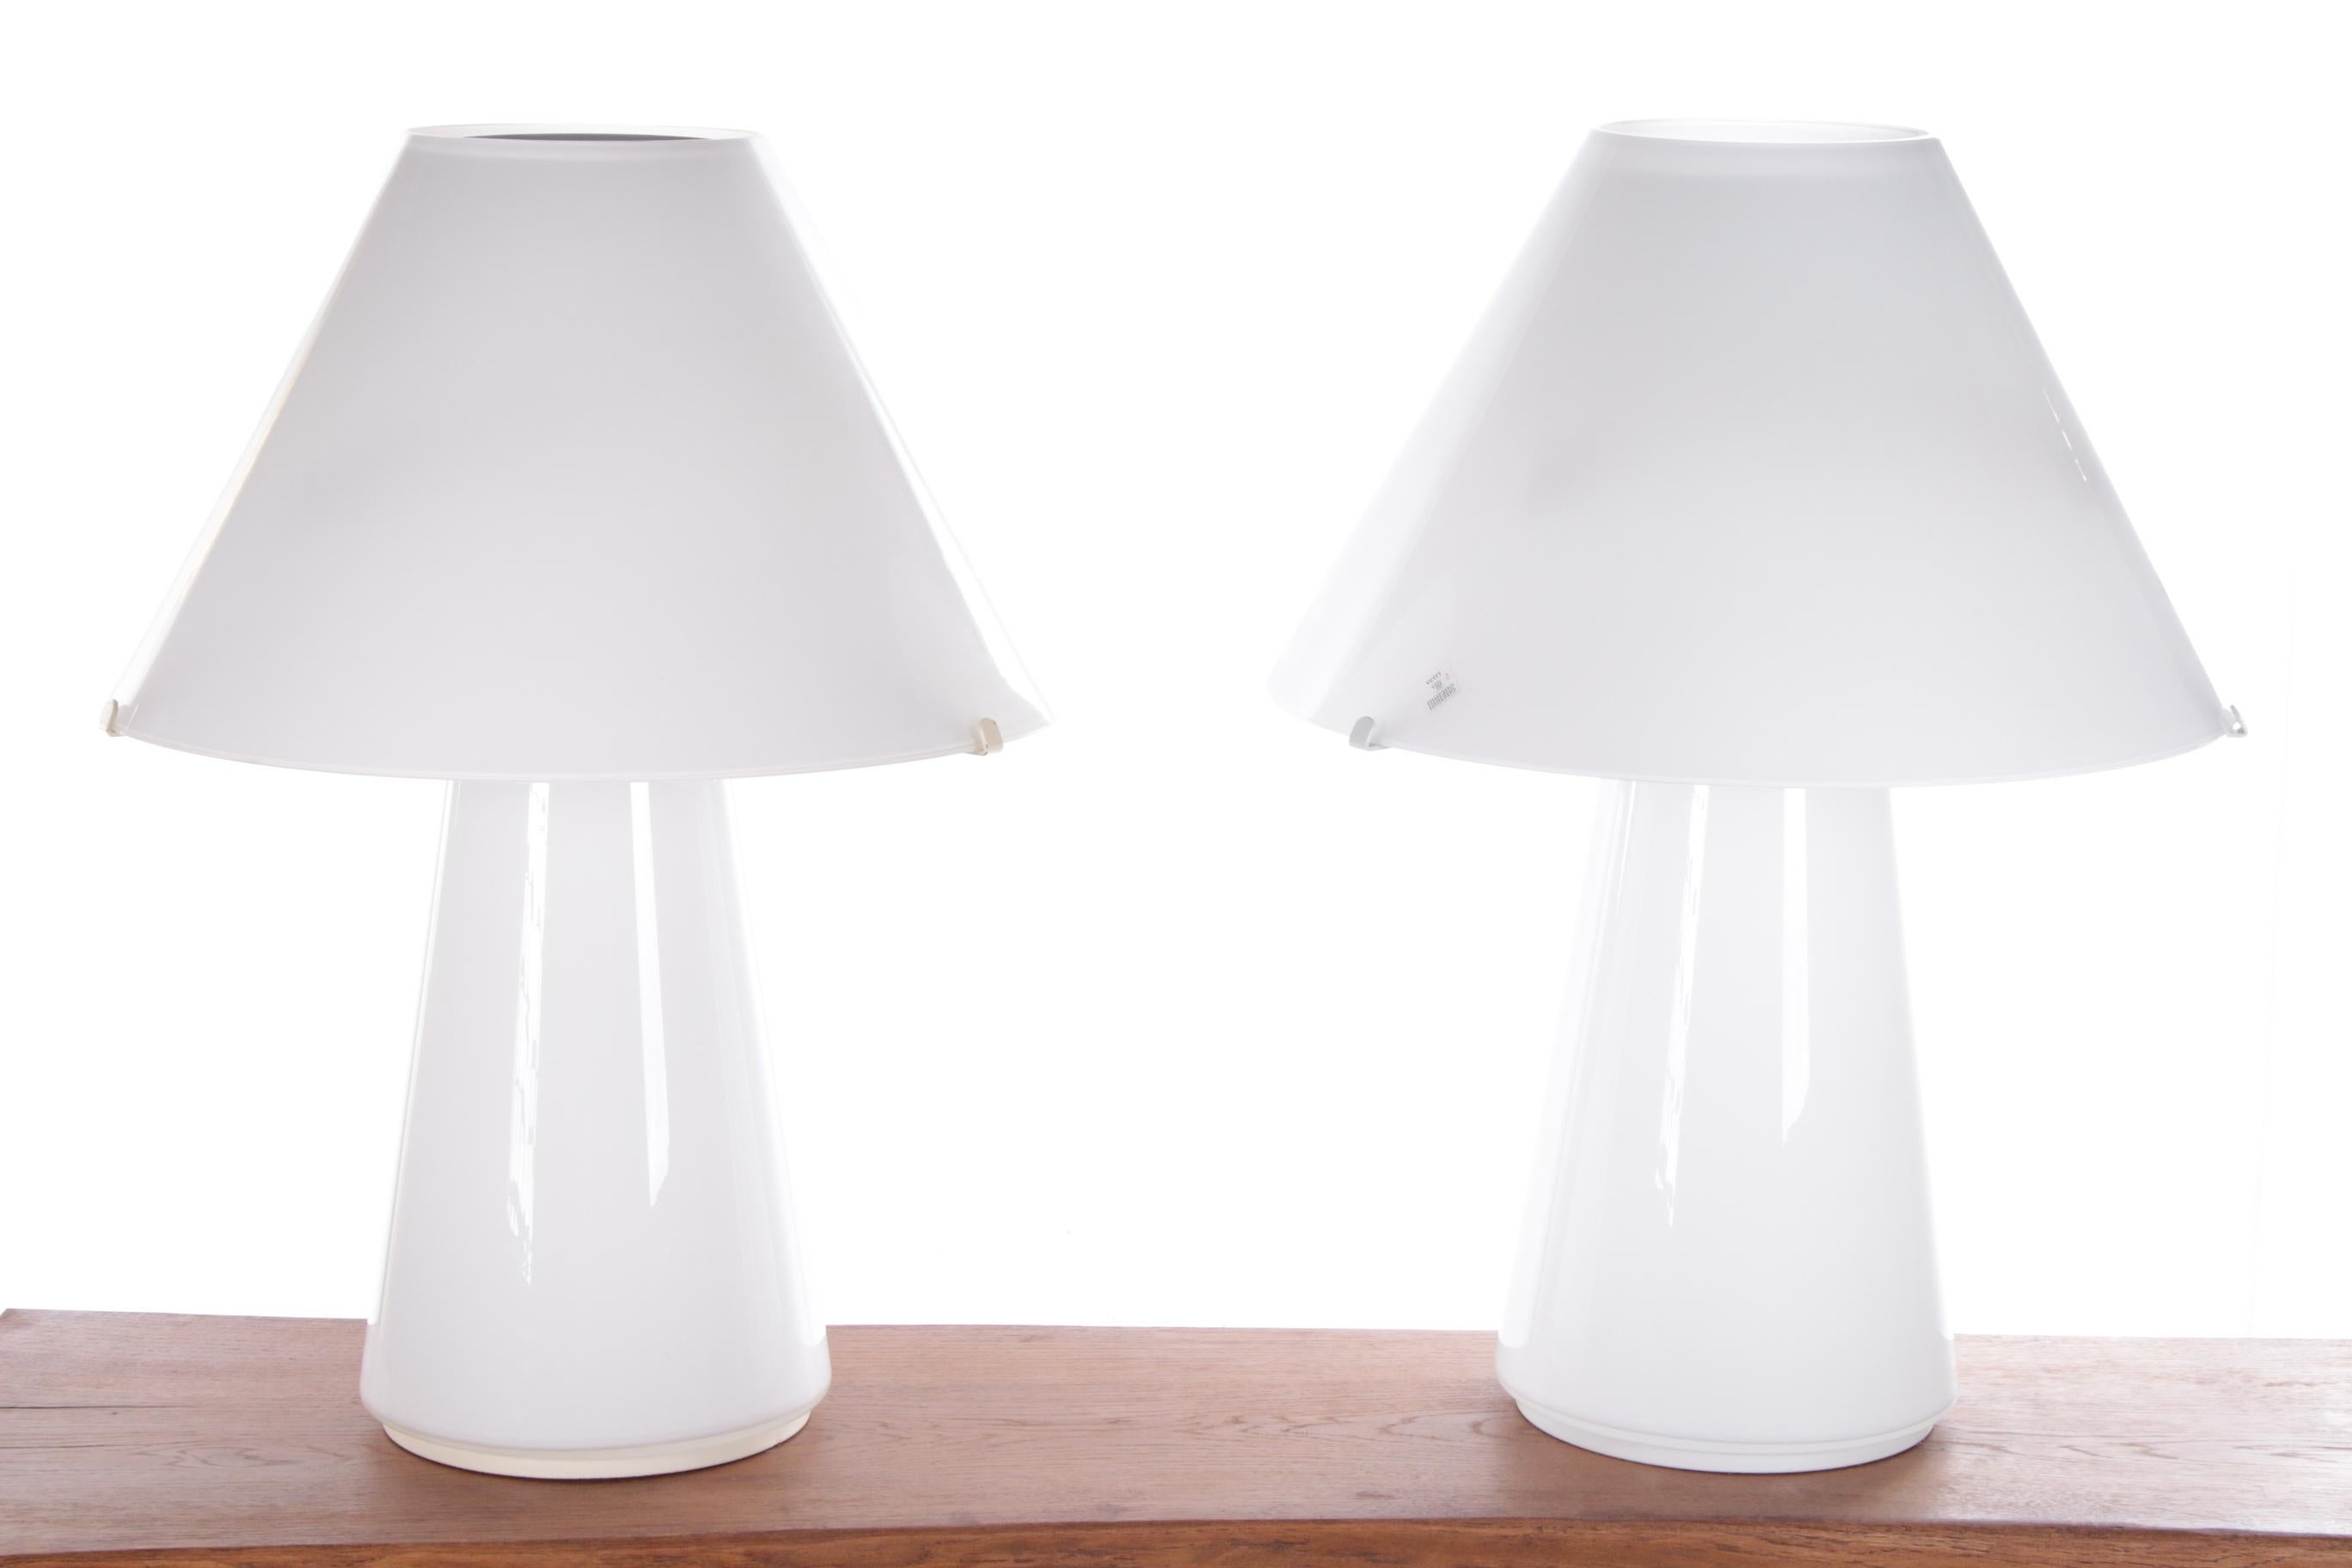 Ce magnifique ensemble de lampes champignons de Murano est original, conçu et fabriqué par Gianni Seguso en 1970.

Cet élégant ensemble de lampes attirera tous les regards dans la pièce. Magnifique sur un buffet dans le salon.

Les lampes design